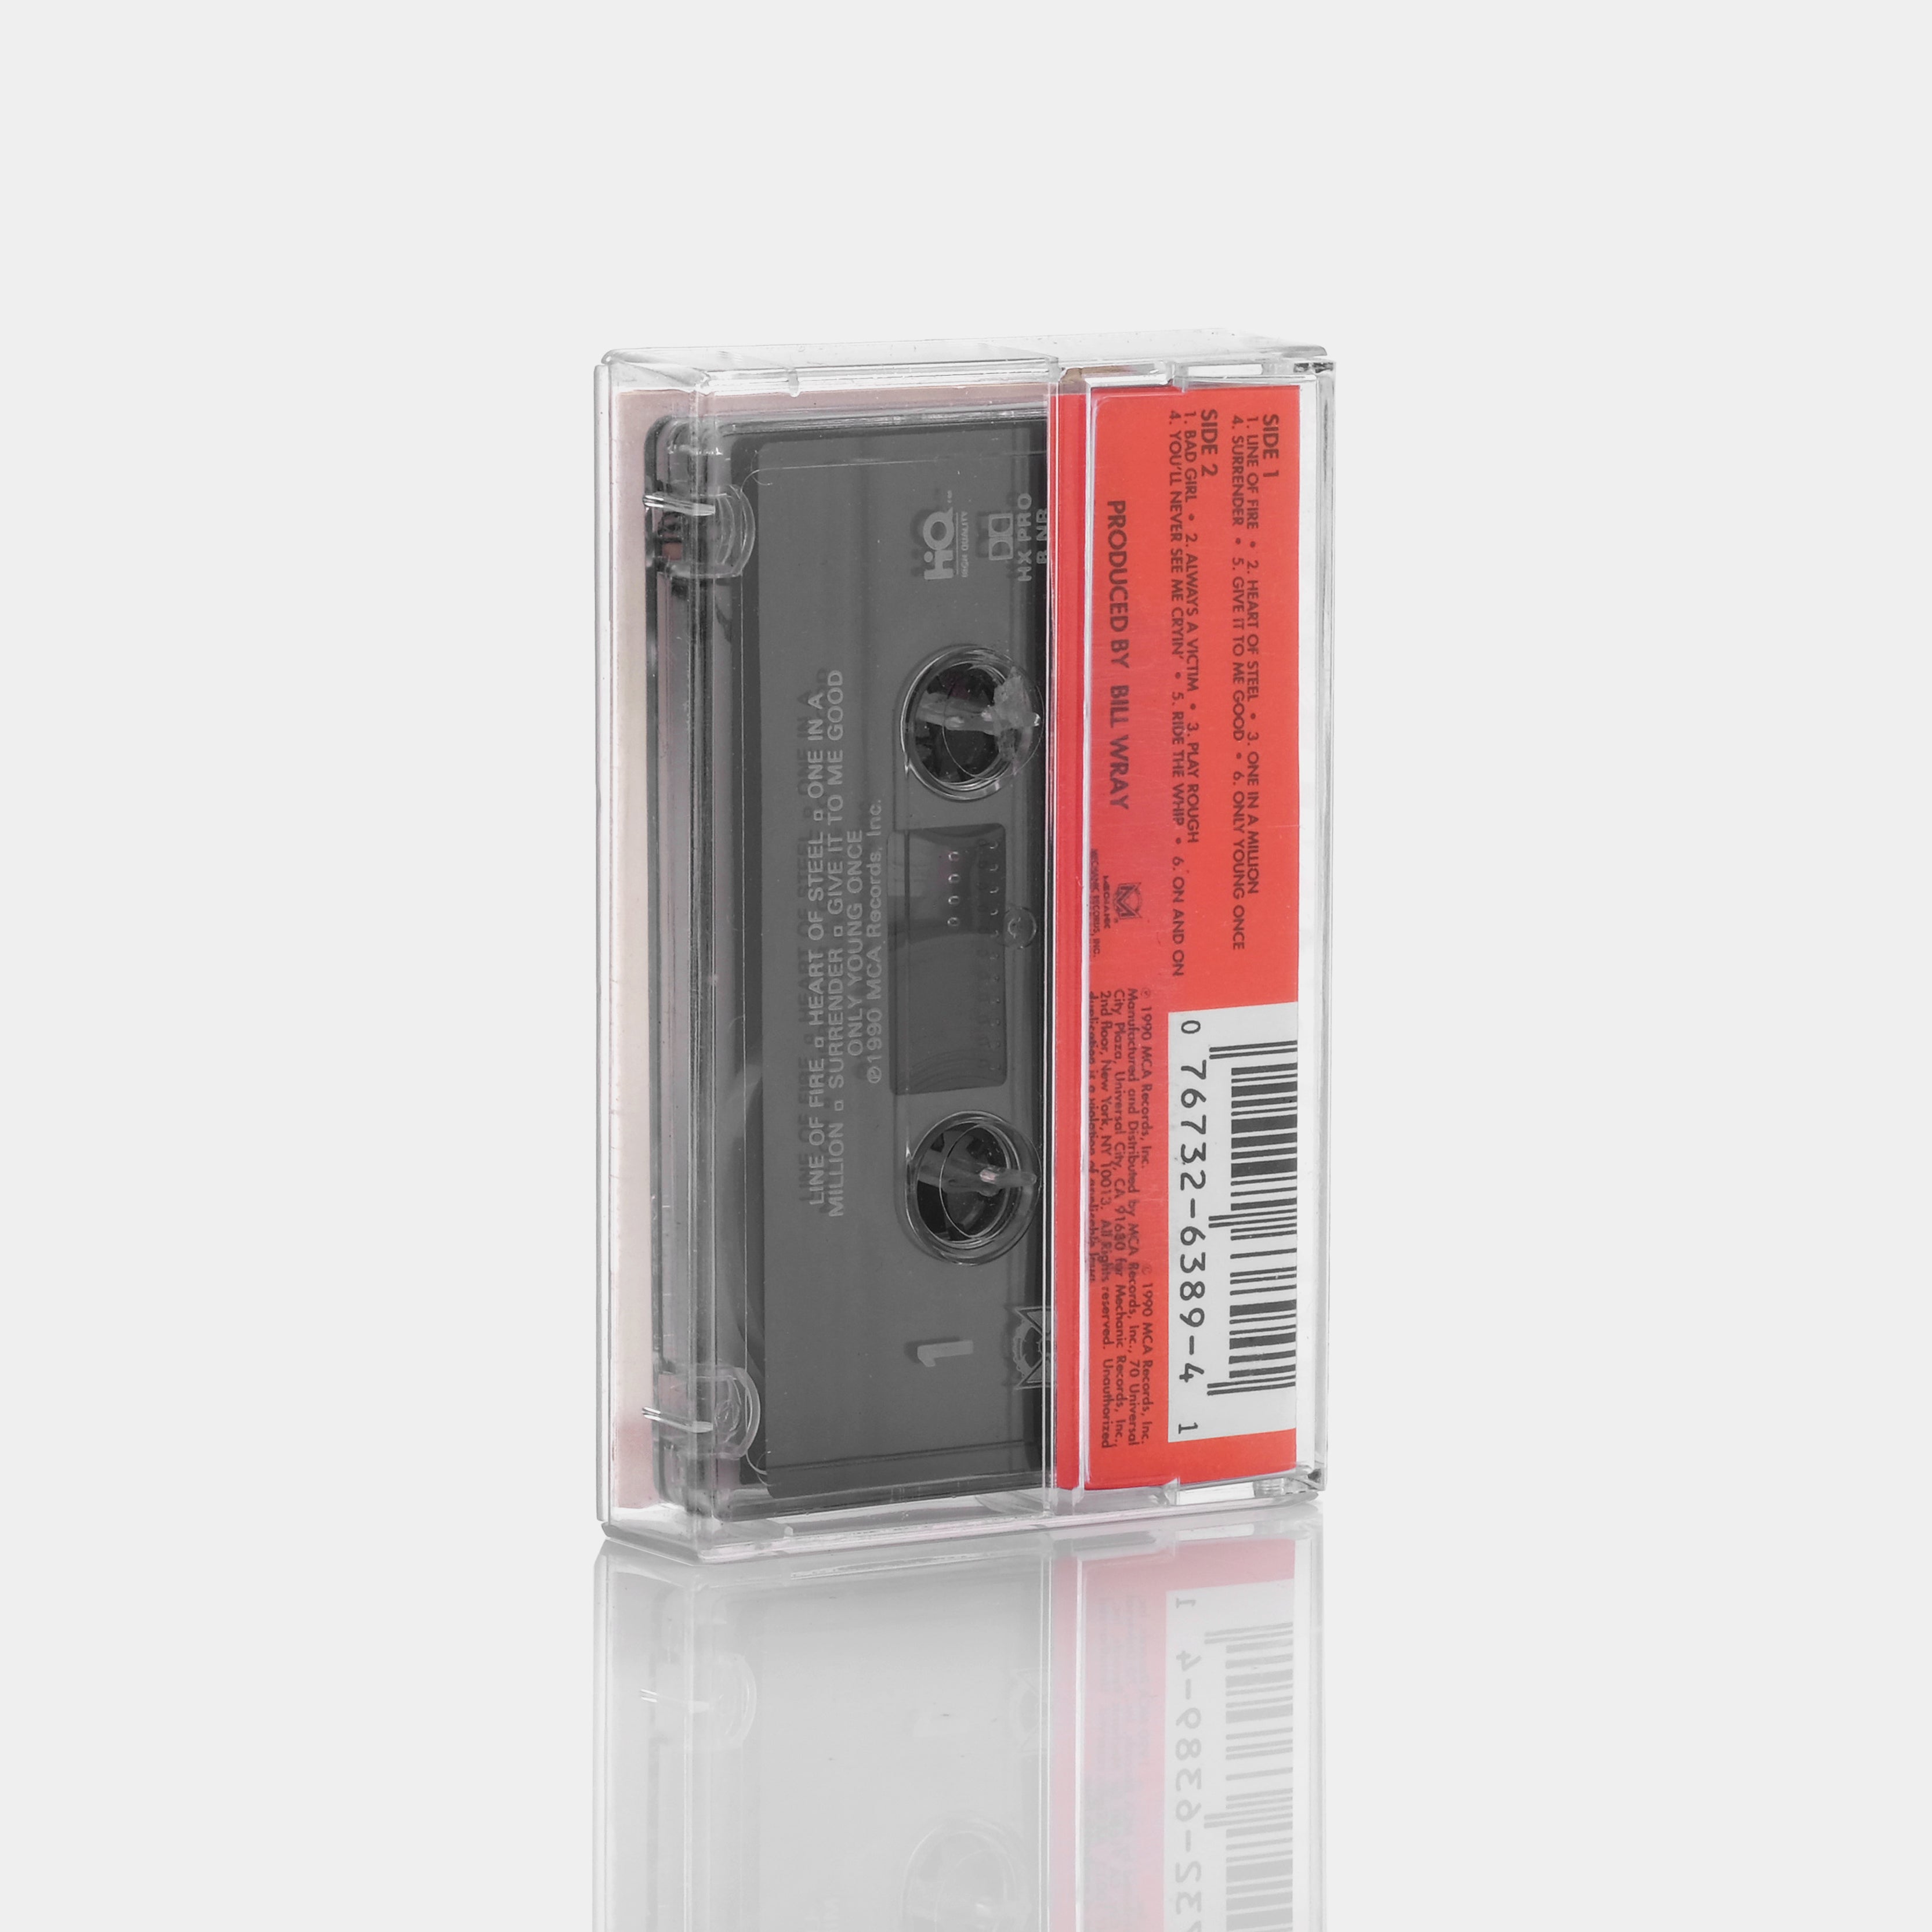 Trixter - Trixter Cassette Tape